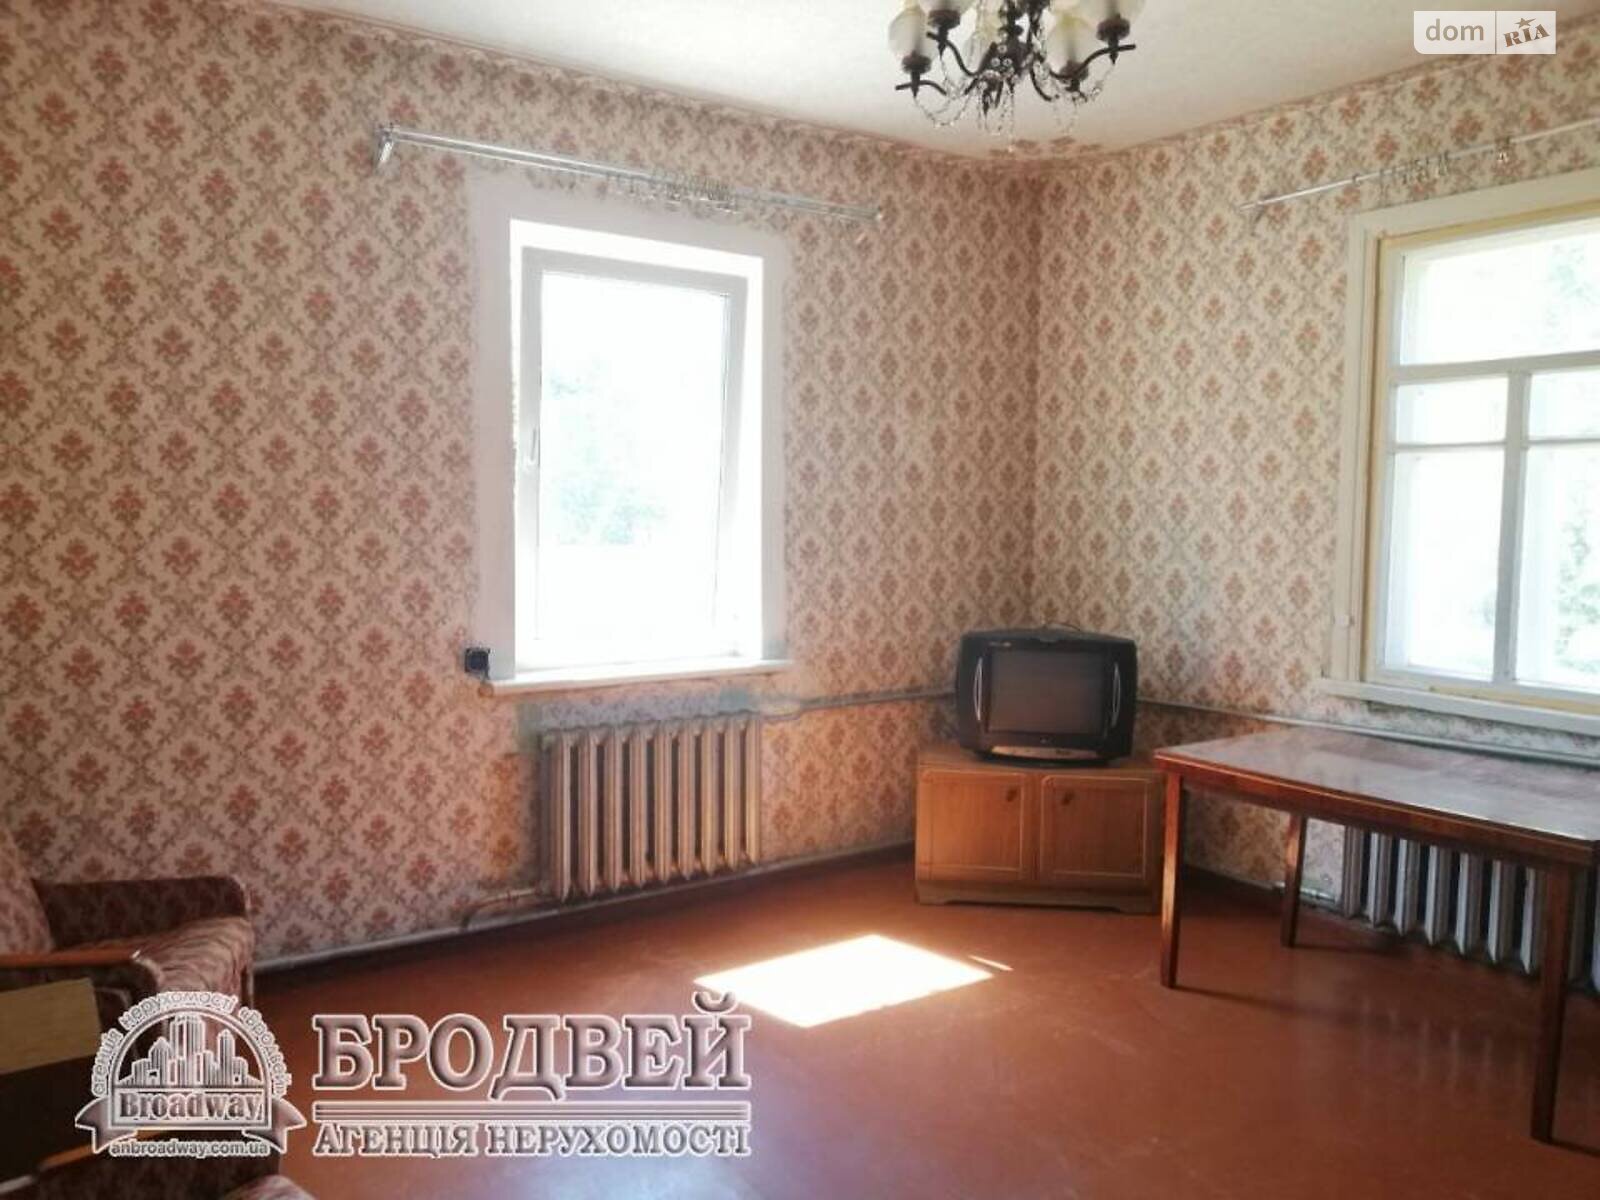 Продажа части дома в Чернигове, улица Житомирская 32, район Старая Подусовка, 3 комнаты фото 1